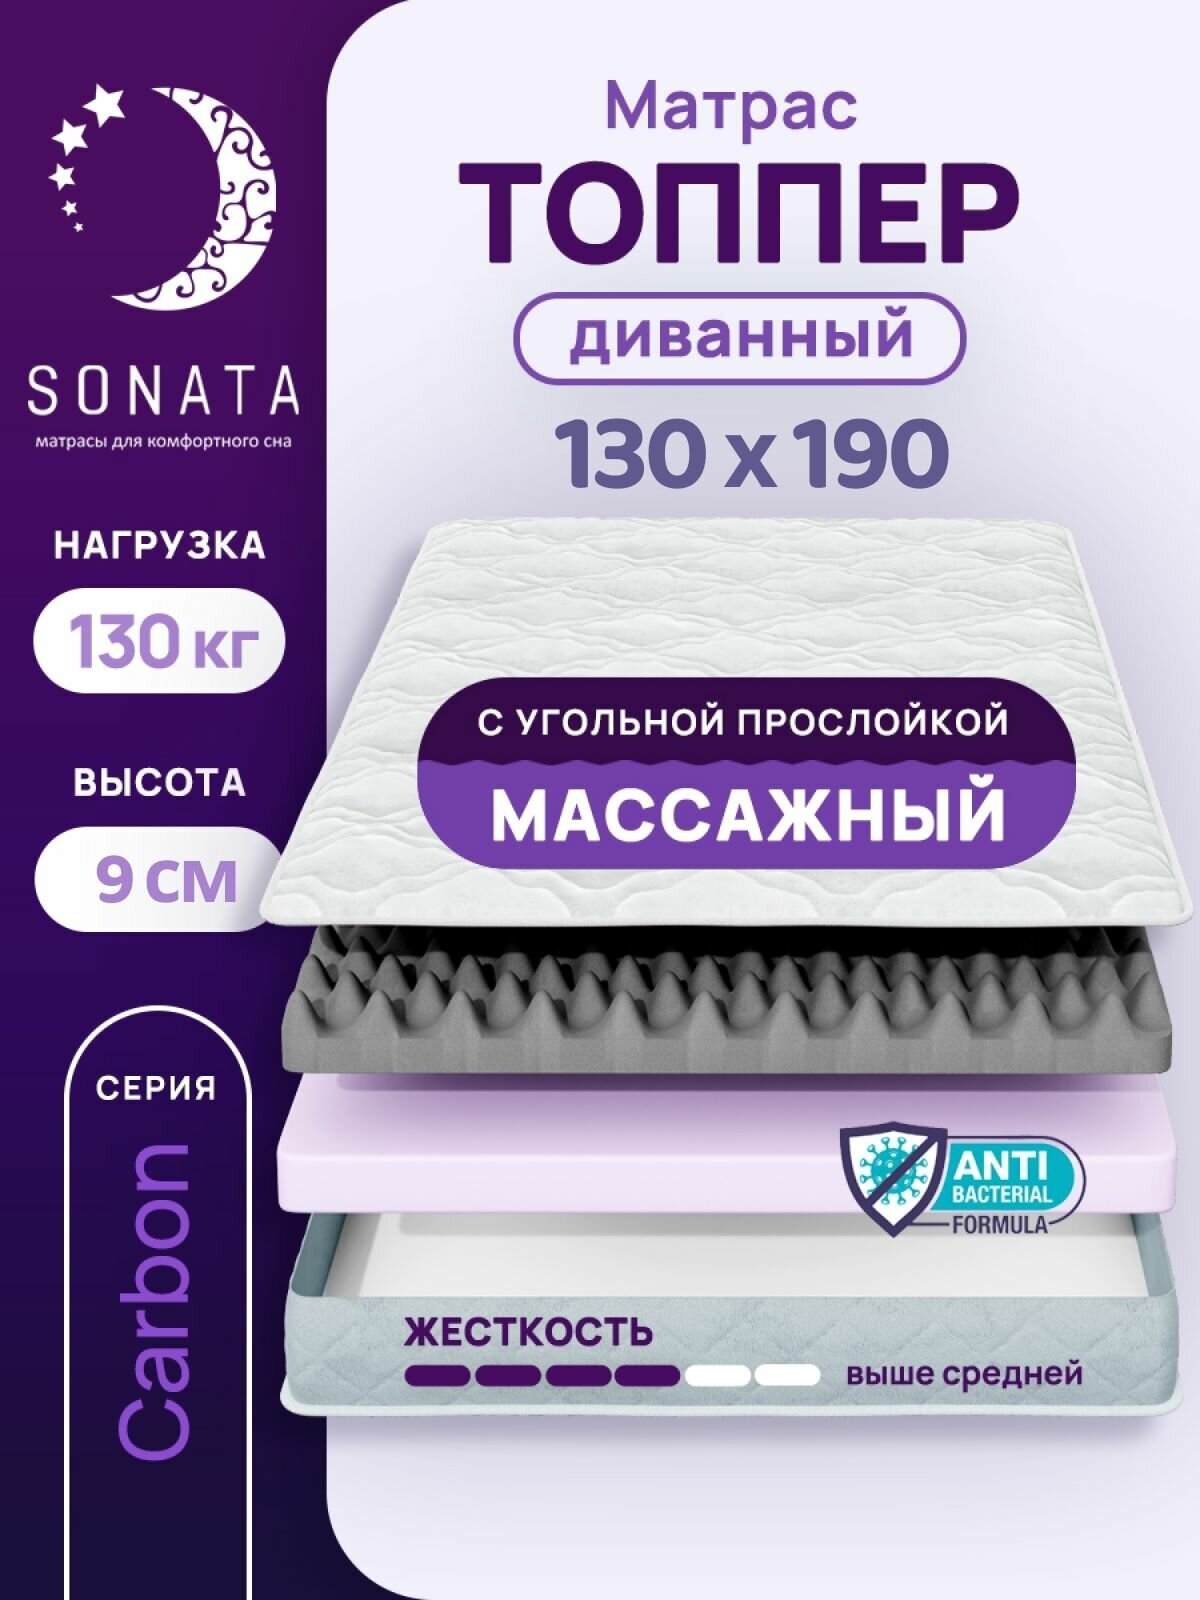 Топпер матрас 130х190 см SONATA, ортопедический, беспружинный, односпальный, тонкий матрац для дивана, кровати, высота 9 см с массажным эффектом